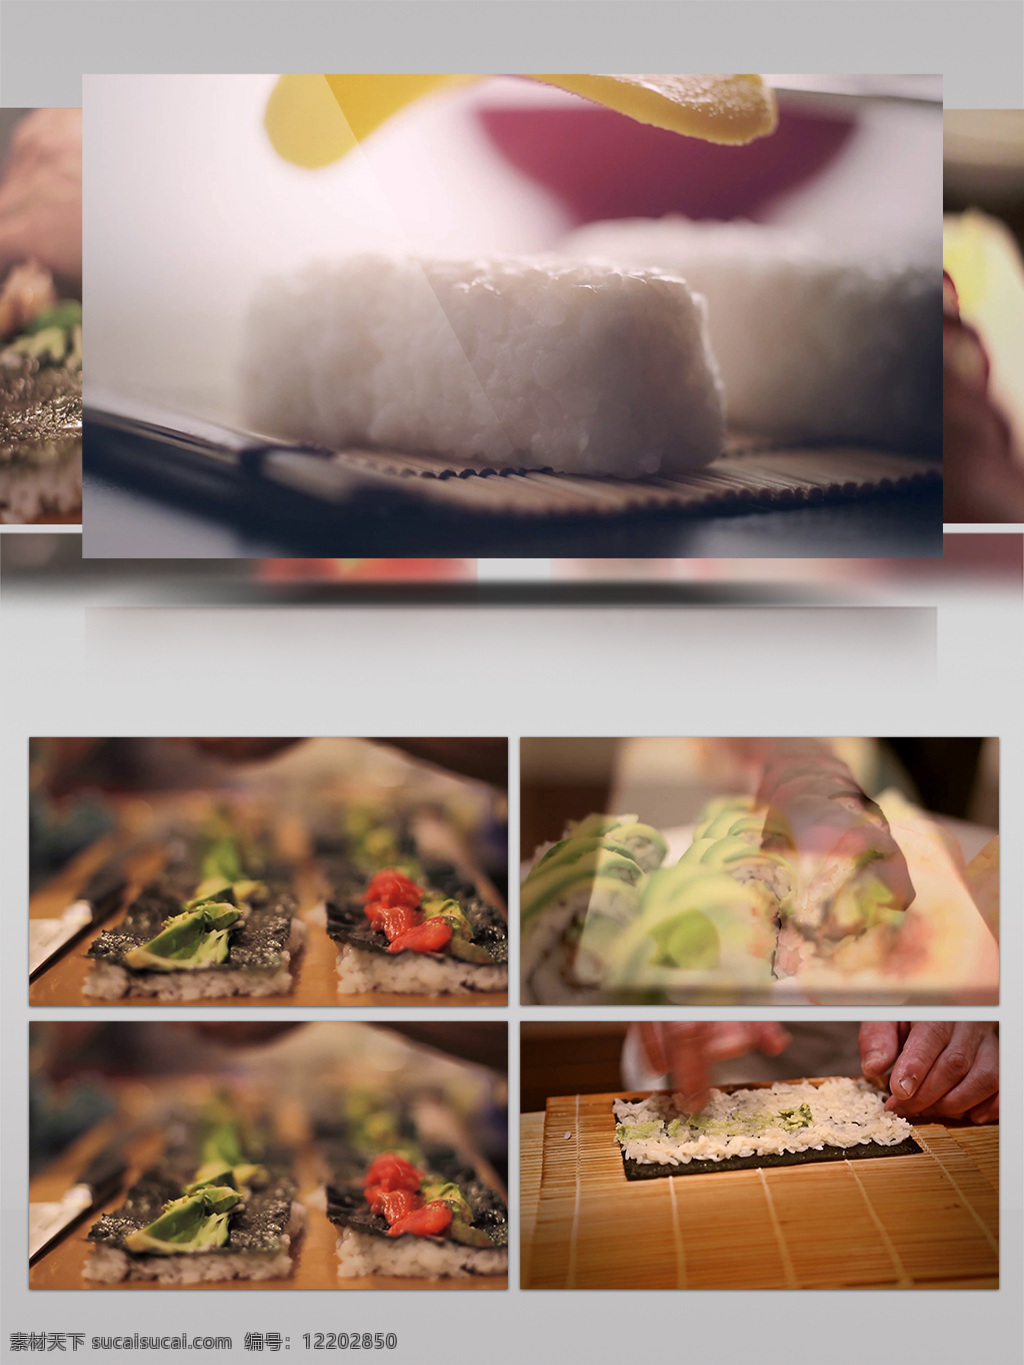 回转 寿司 超 高清 视频 拍摄 菜品特写 餐饮 海鲜 回转寿司 精致 美食 美味 日本 日本饭馆 日本料理 日本美食 日本特色 食材